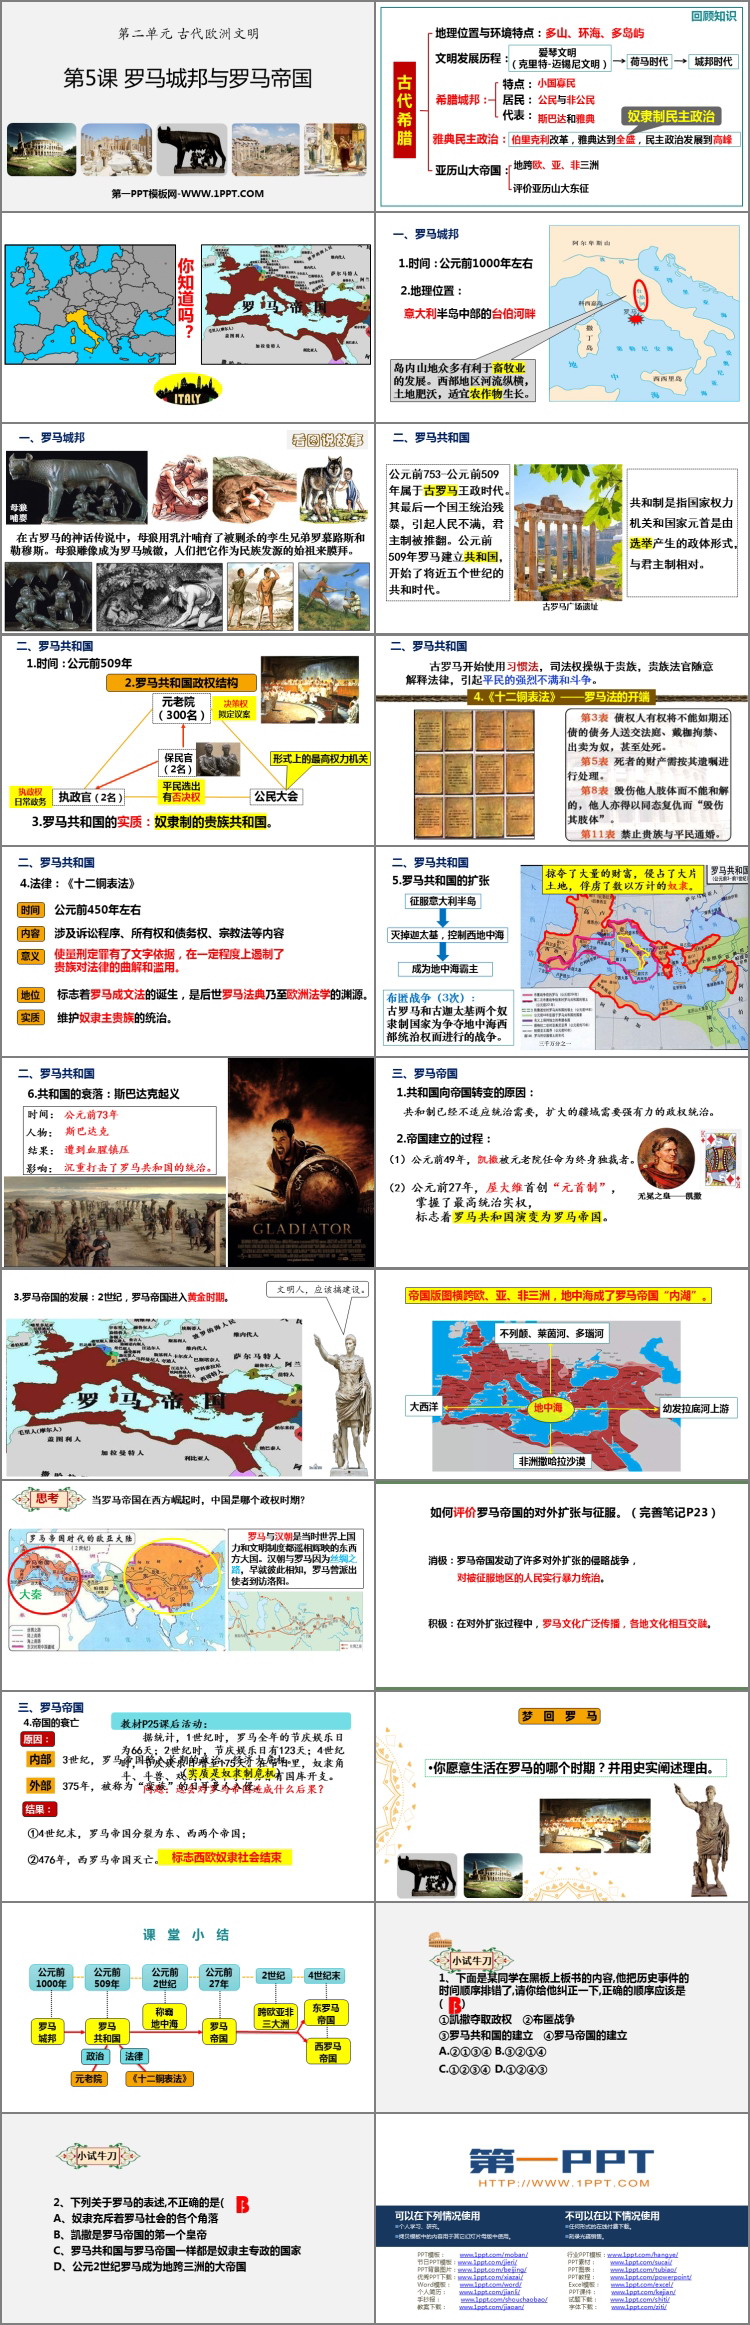 《罗马城邦和罗马帝国》PPT免费下载-预览图02